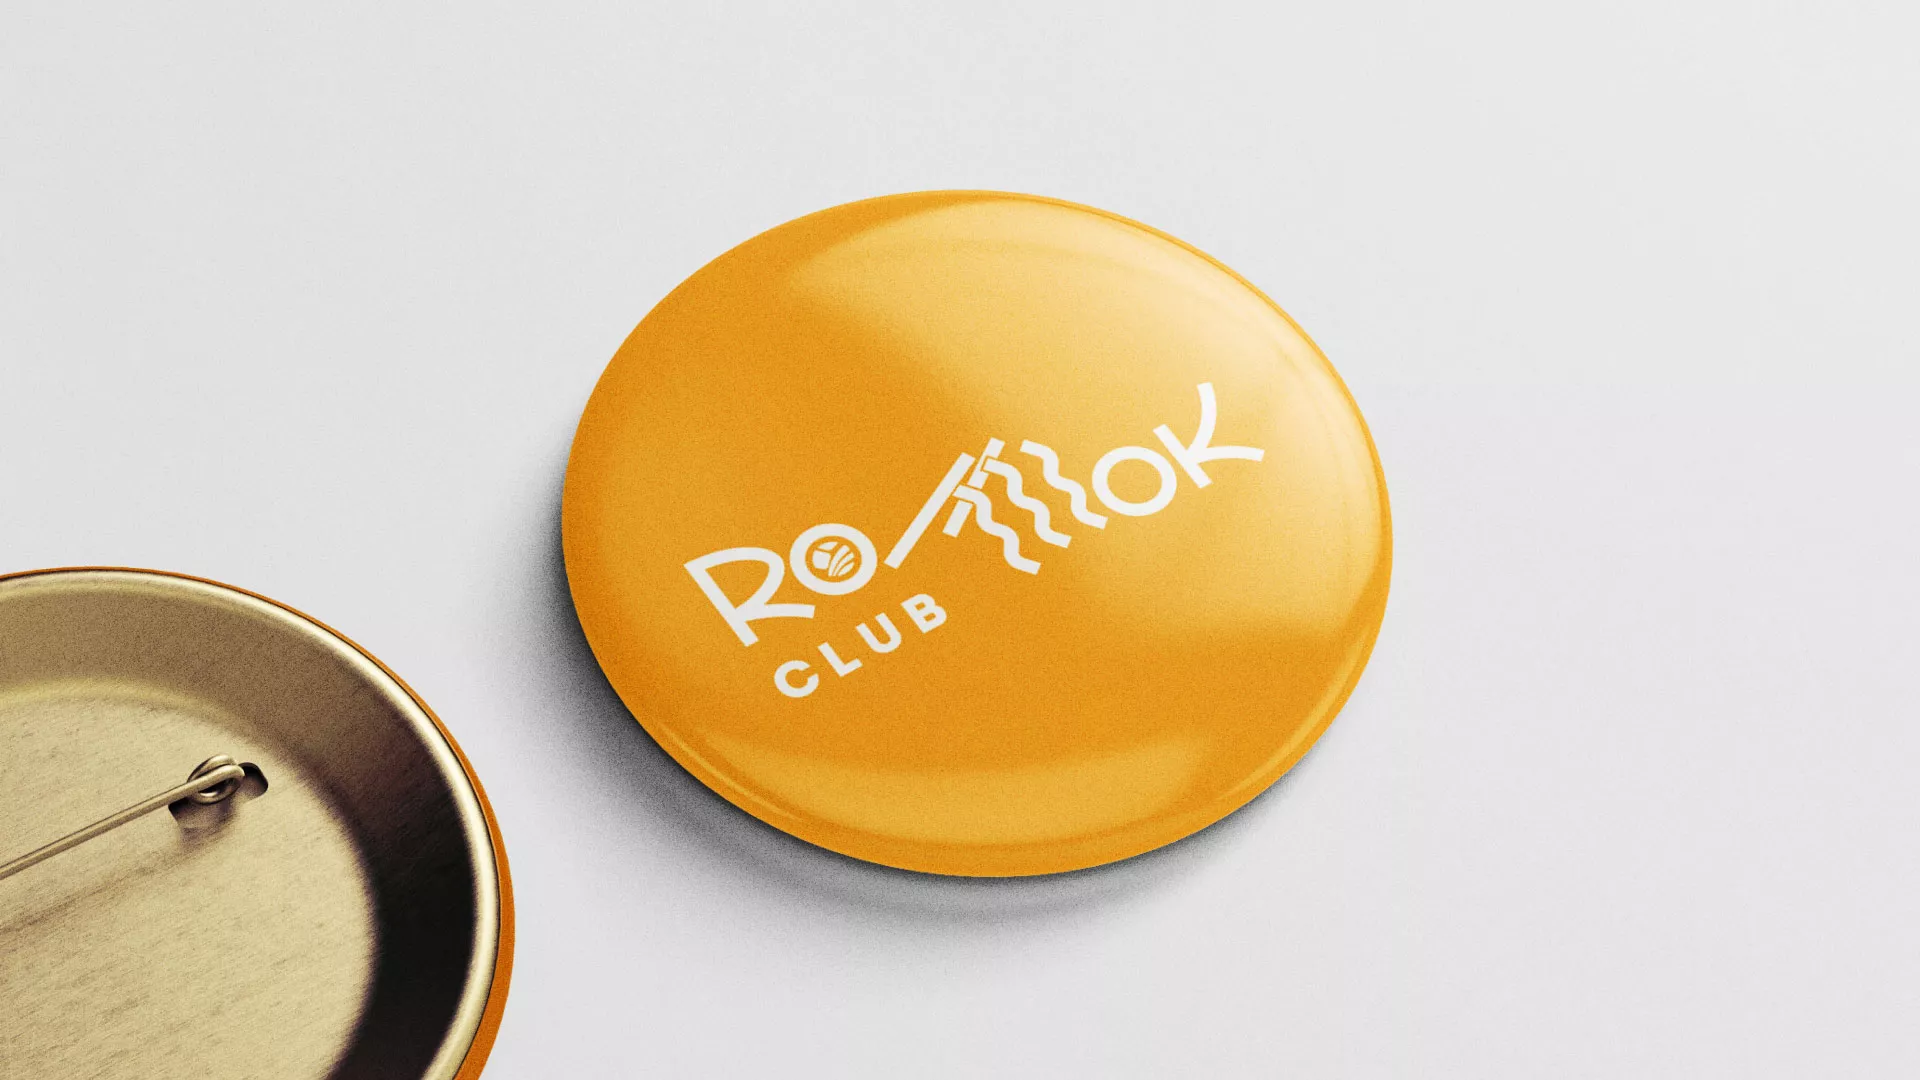 Создание логотипа суши-бара «Roll Wok Club» в Михайловке